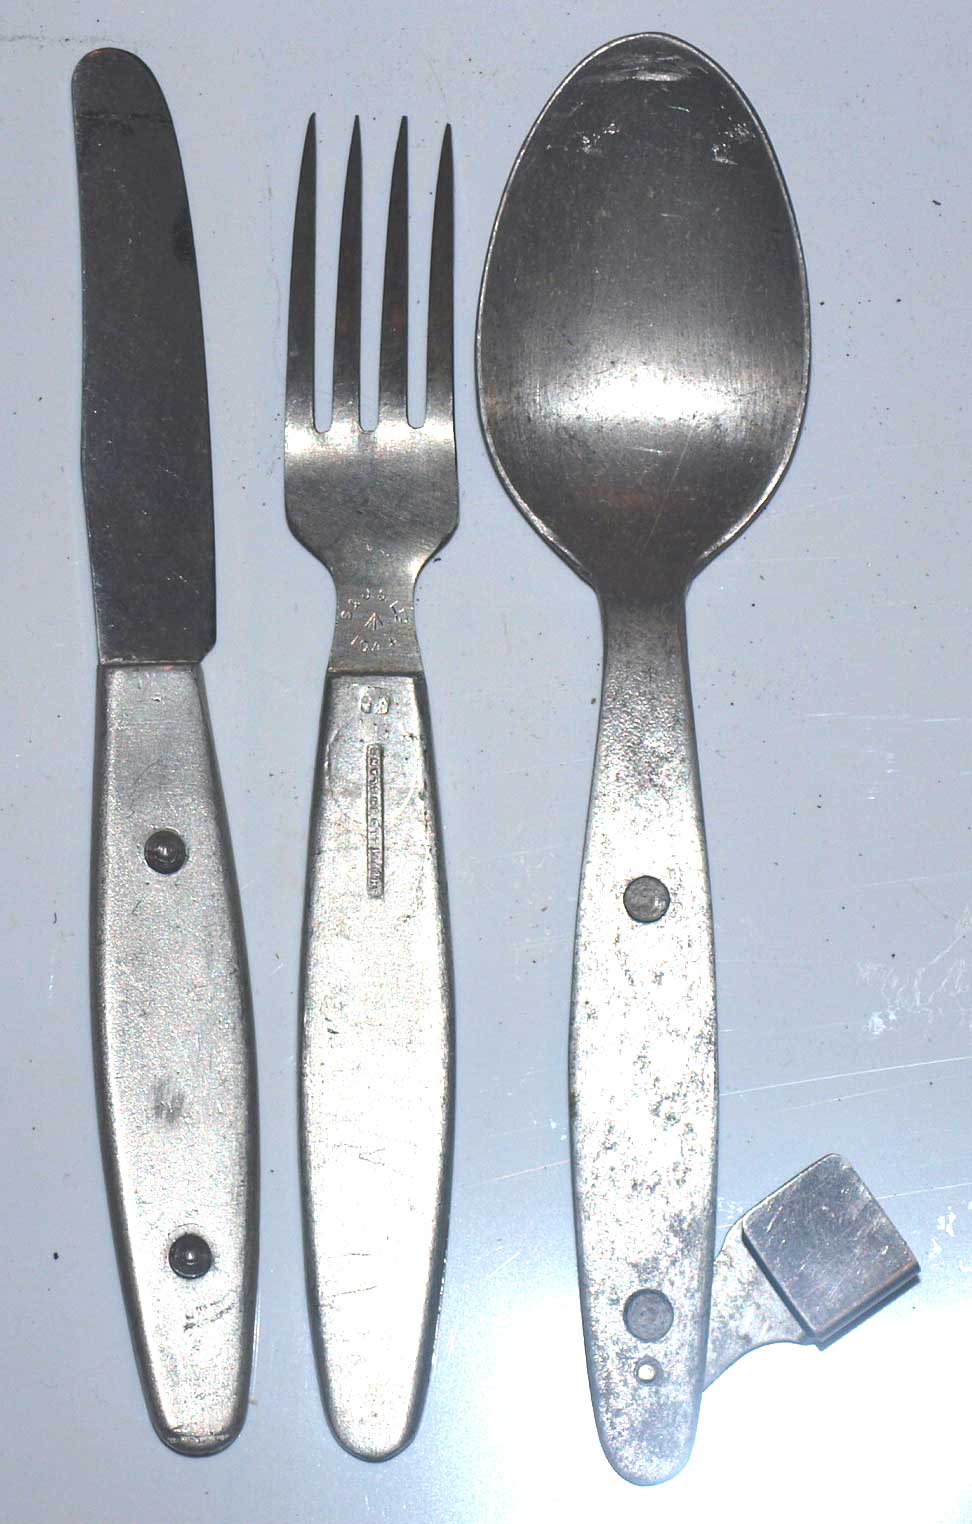 1944/5 Knife, fork, spoon clip together set